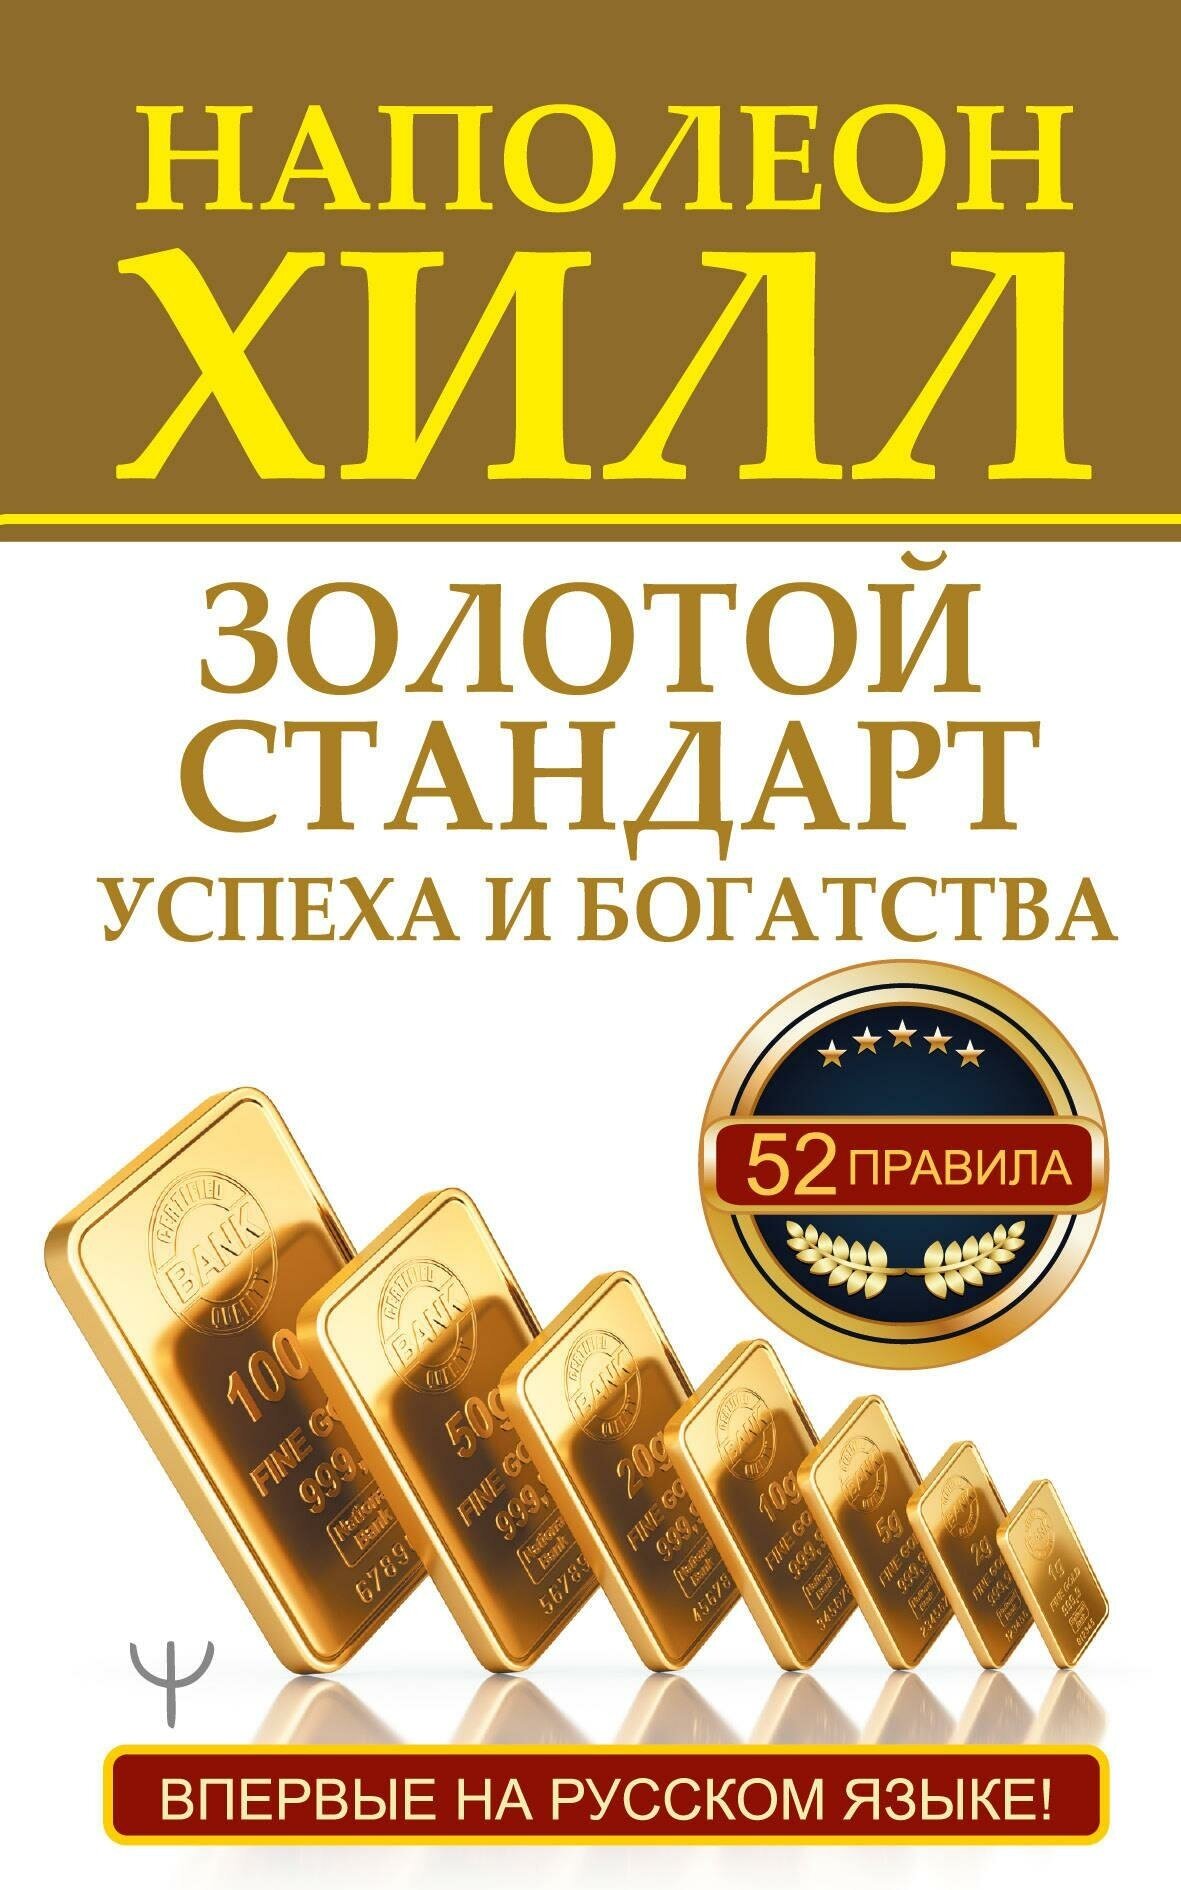 Хилл Н. Золотой стандарт успеха и богатства. 52 правила. Впервые на русском языке. Главный секрет притяжения денег